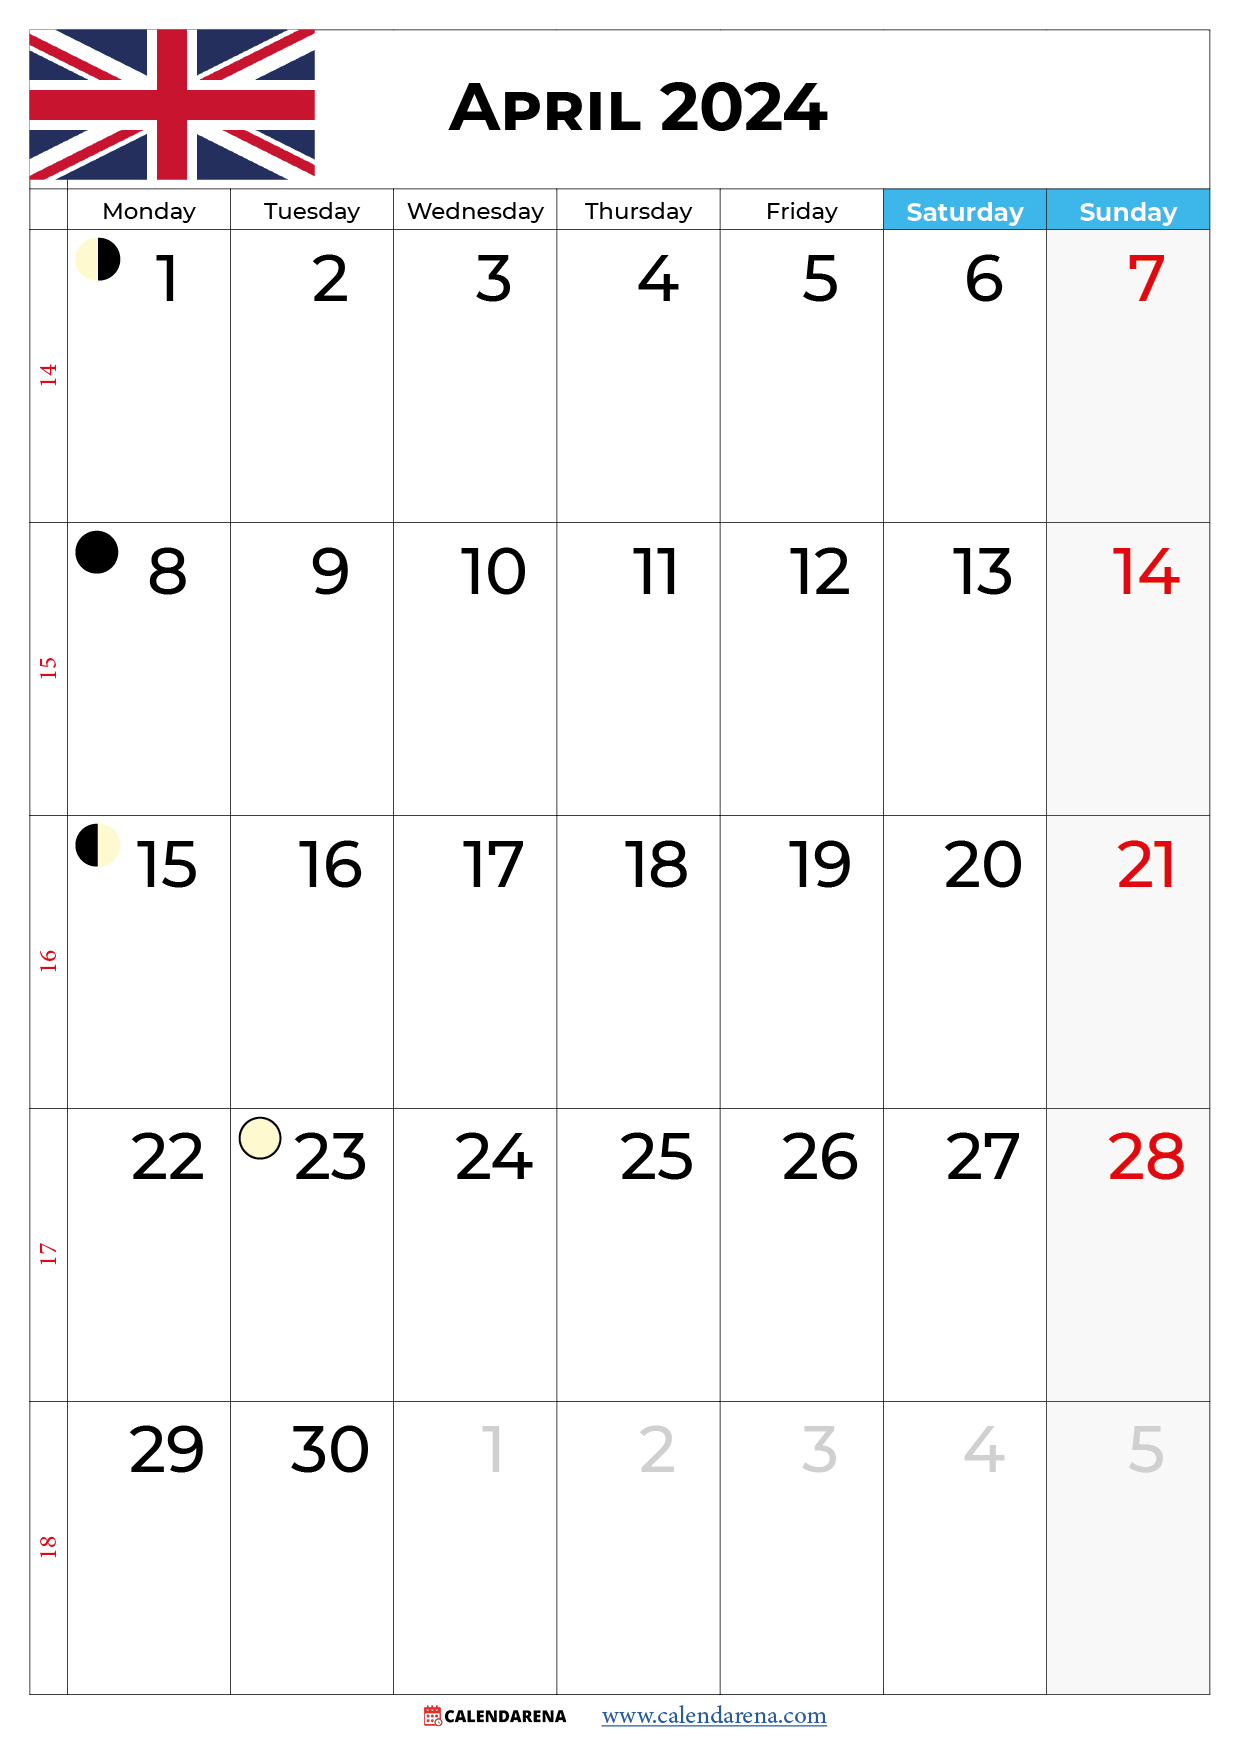 april calendar 2024 with holidays Uk